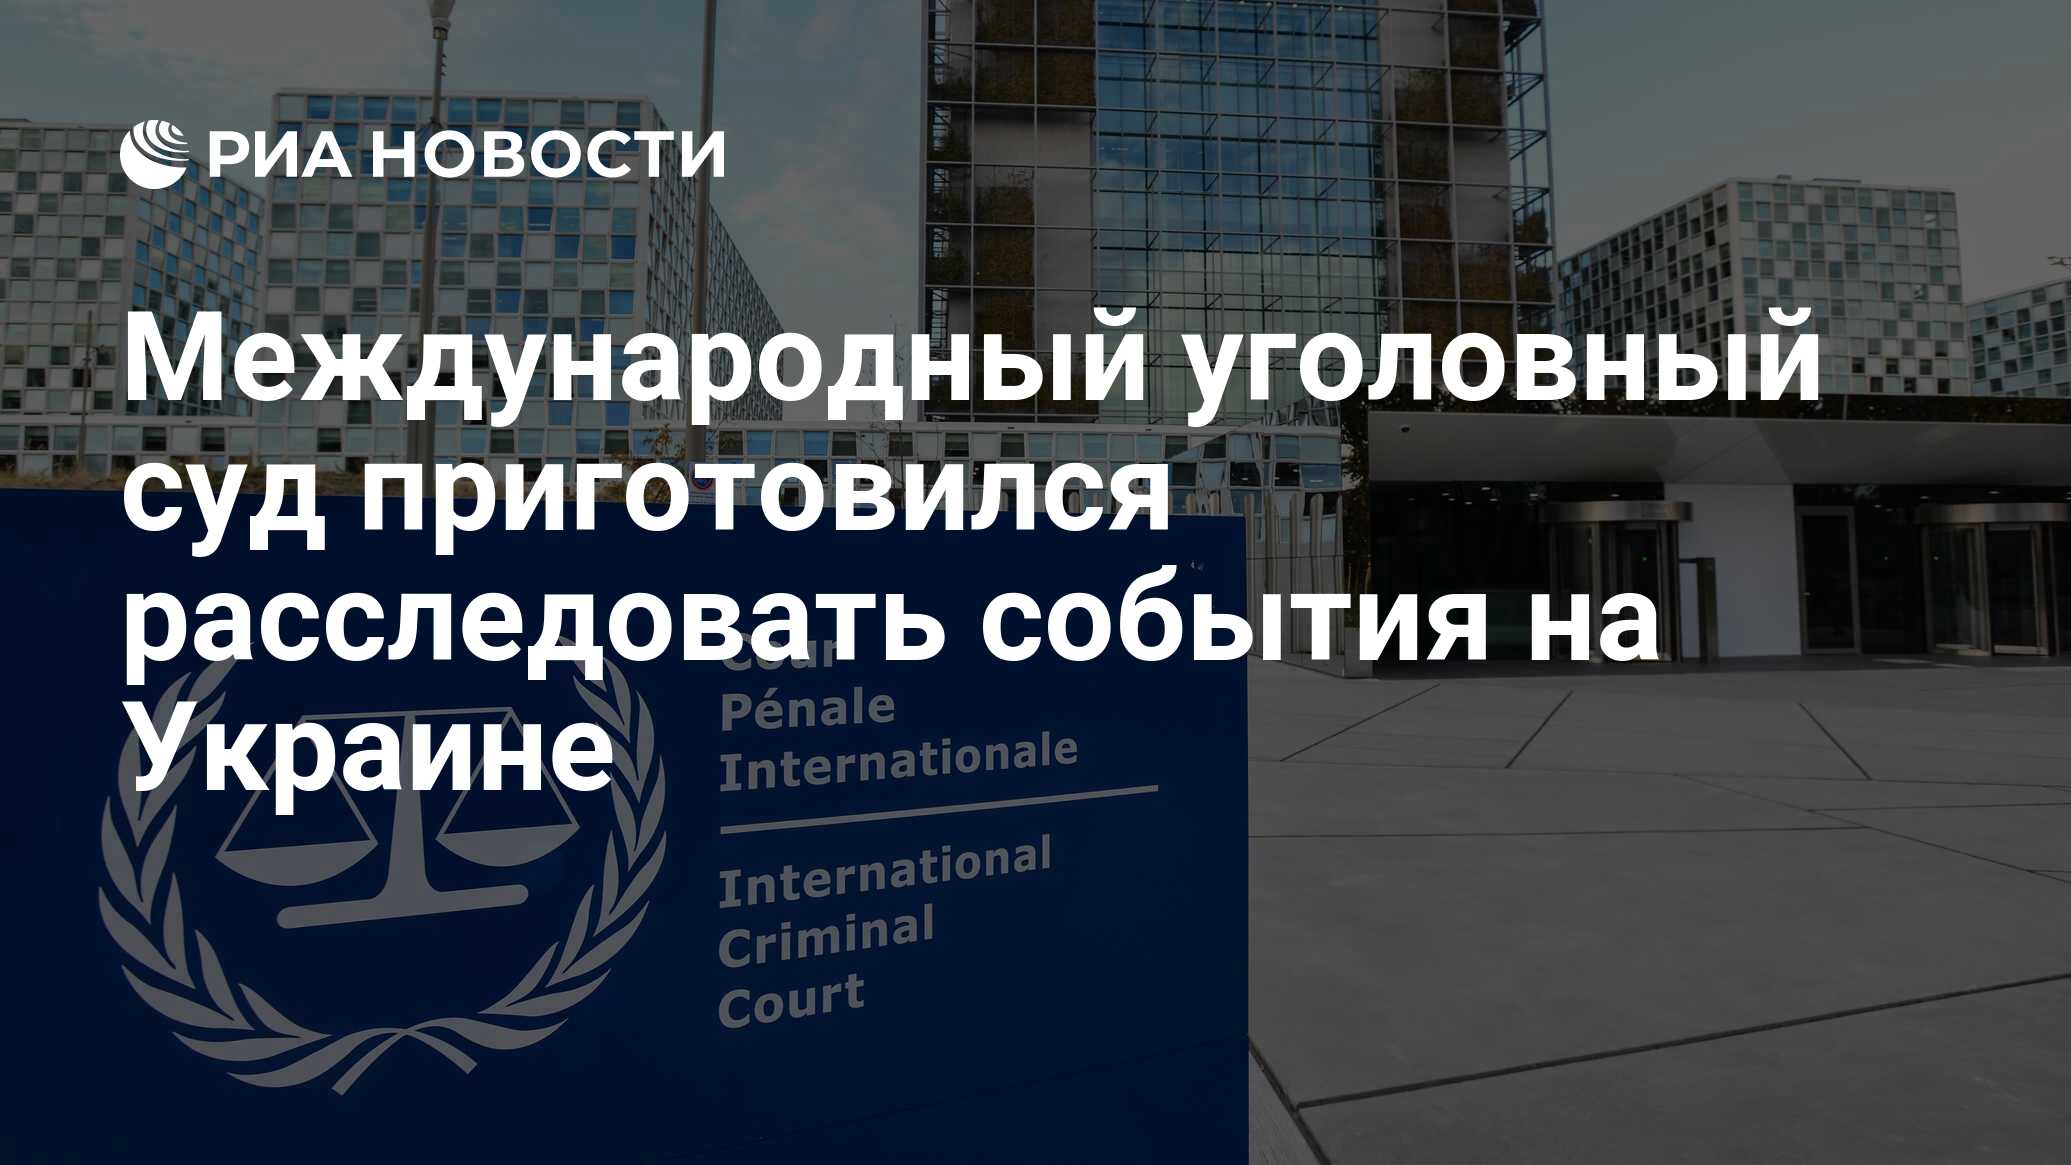 Международный уголовный суд готовится расследовать события в Украине